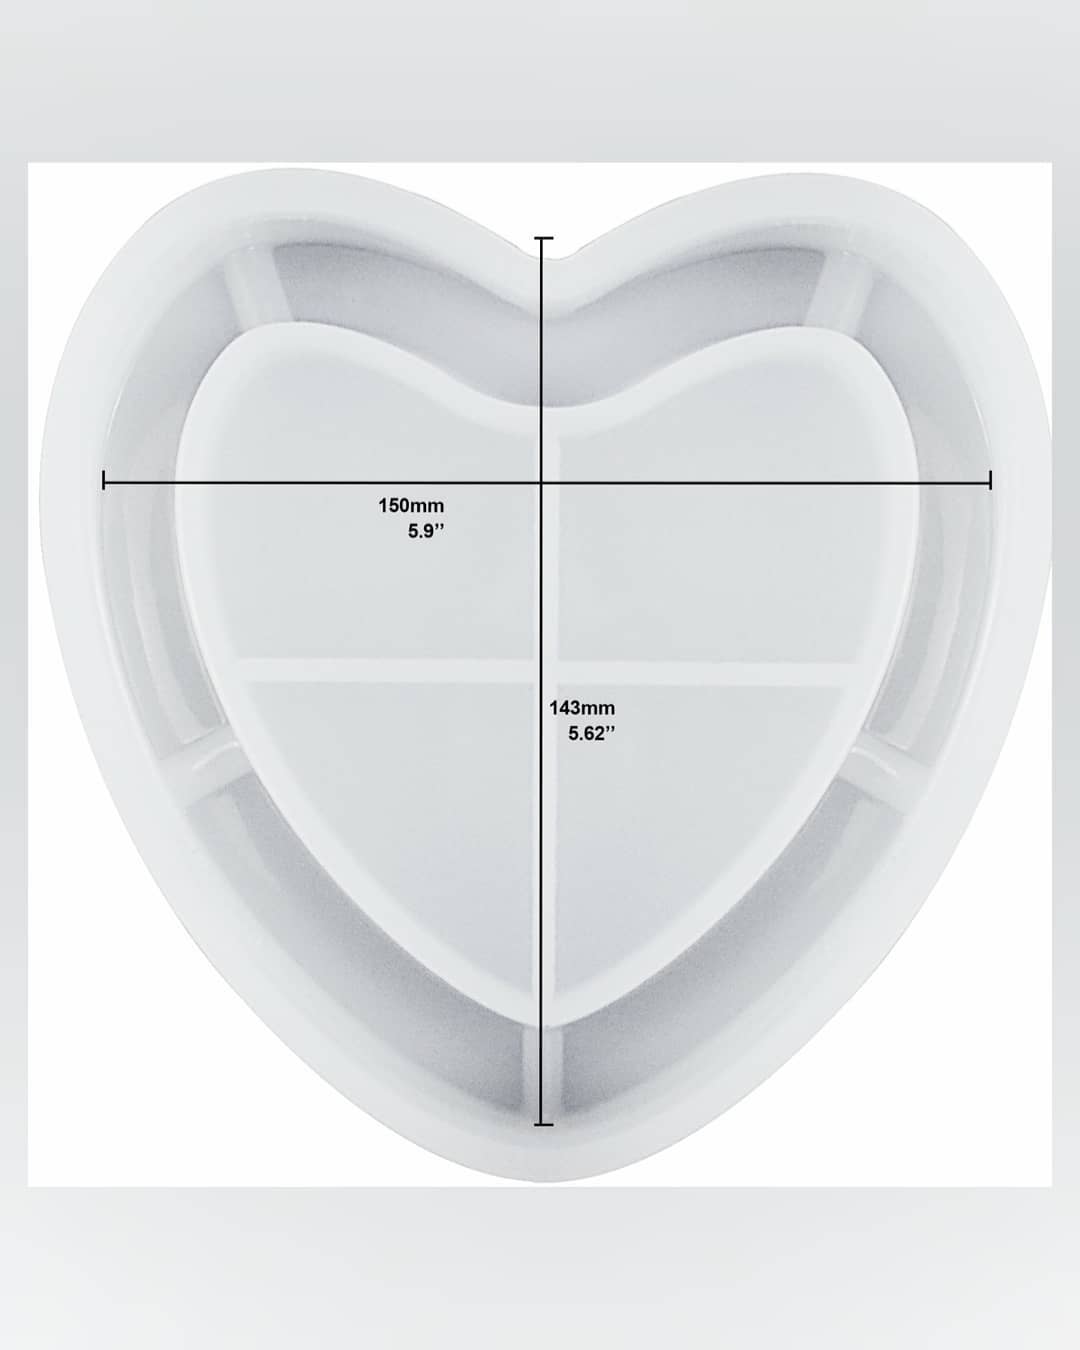  قالب زیرسیگاری(طرح قلب)